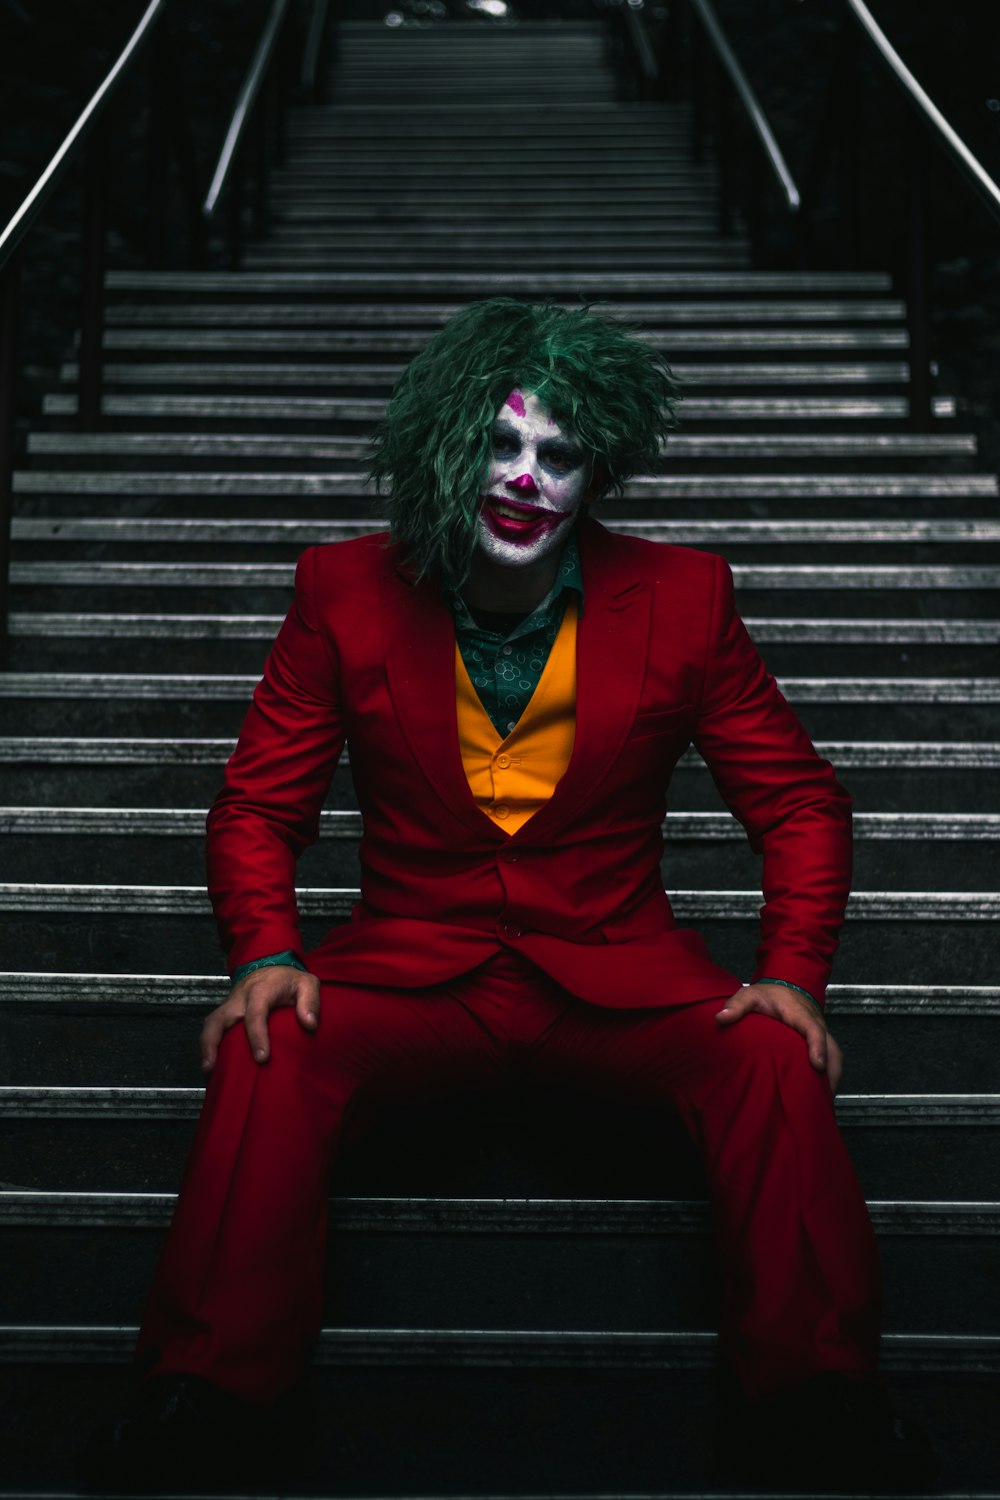 Joker on stairs